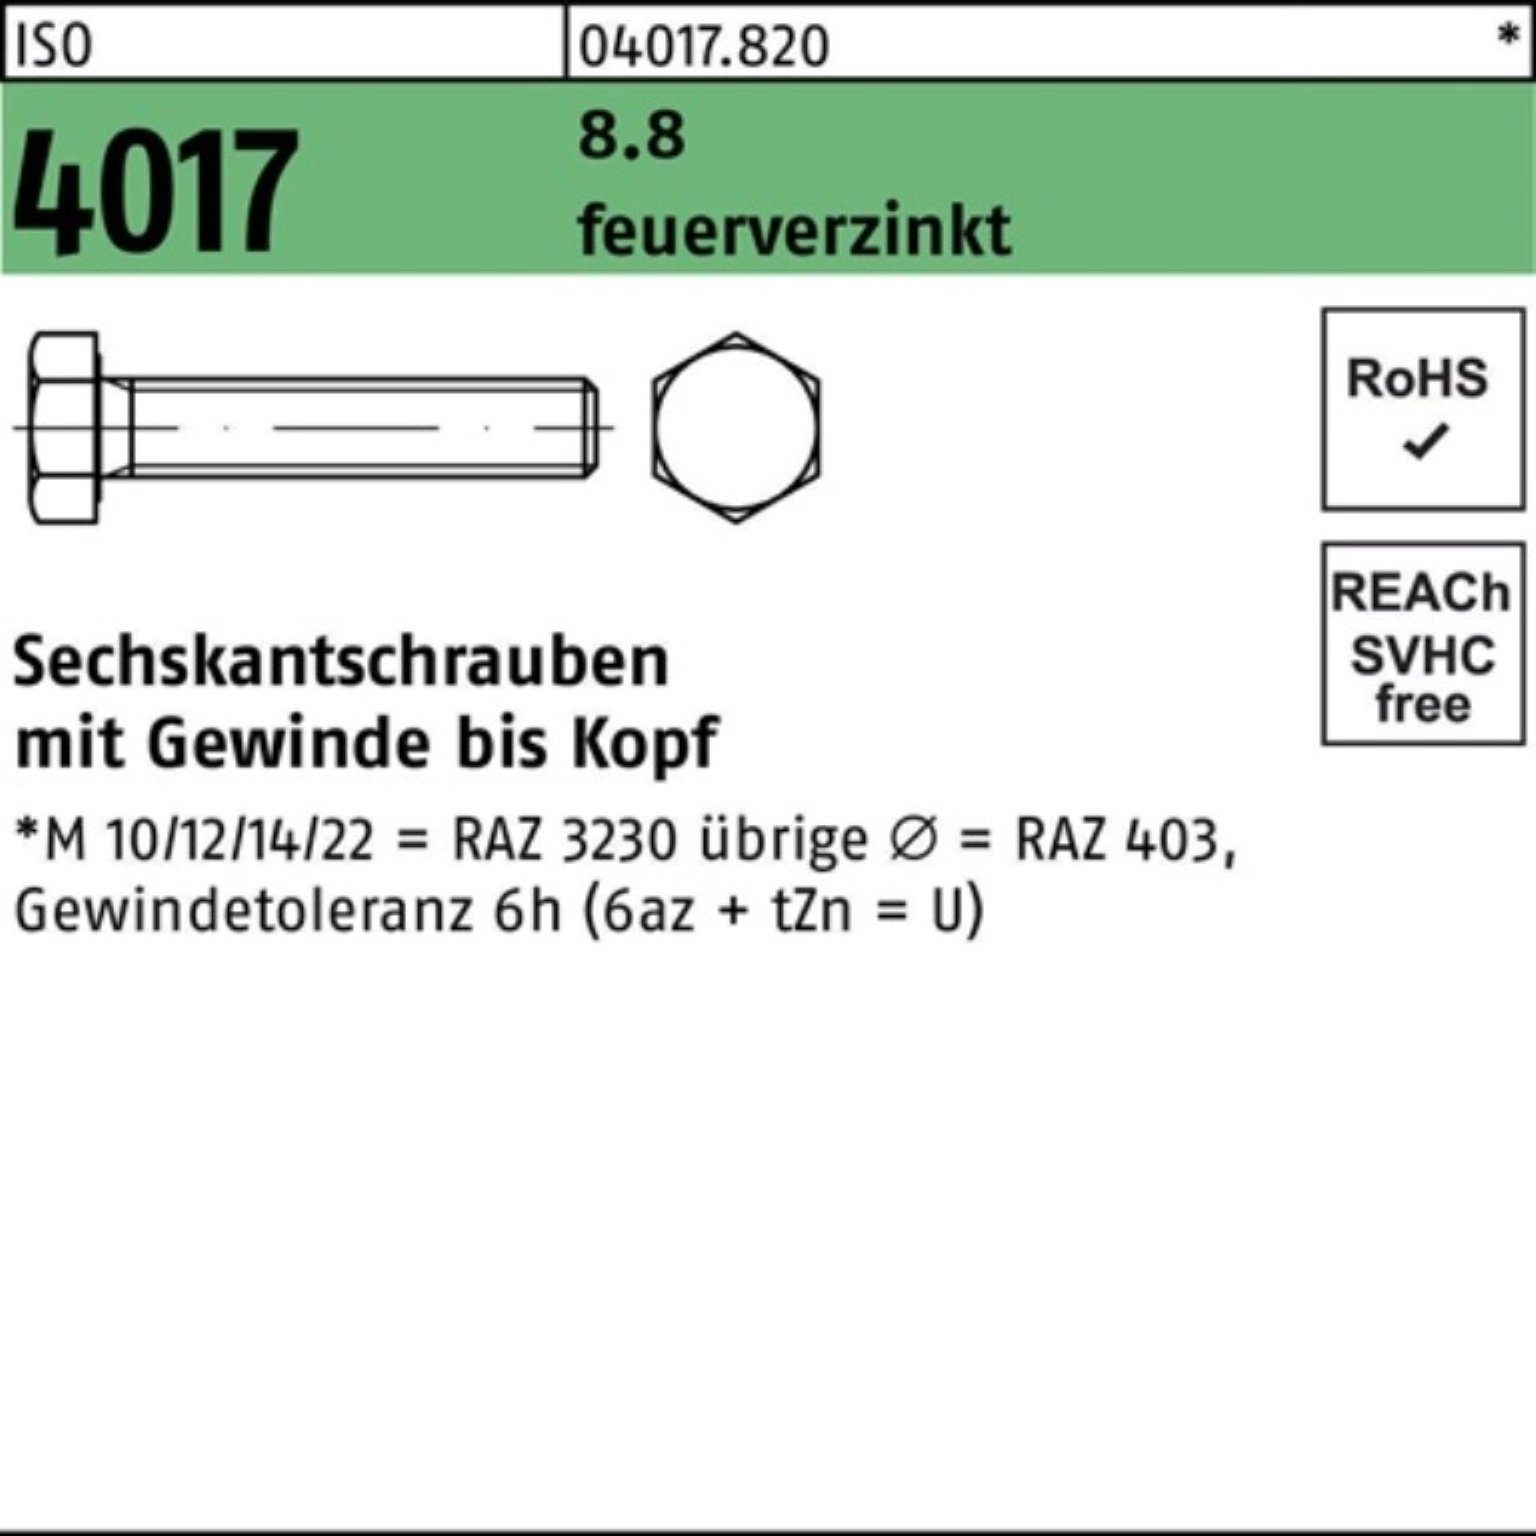 Bufab Sechskantschraube 100er Pack Sechskantschraube ISO 4017 VG M10x 45 8.8 feuerverz. 100 St